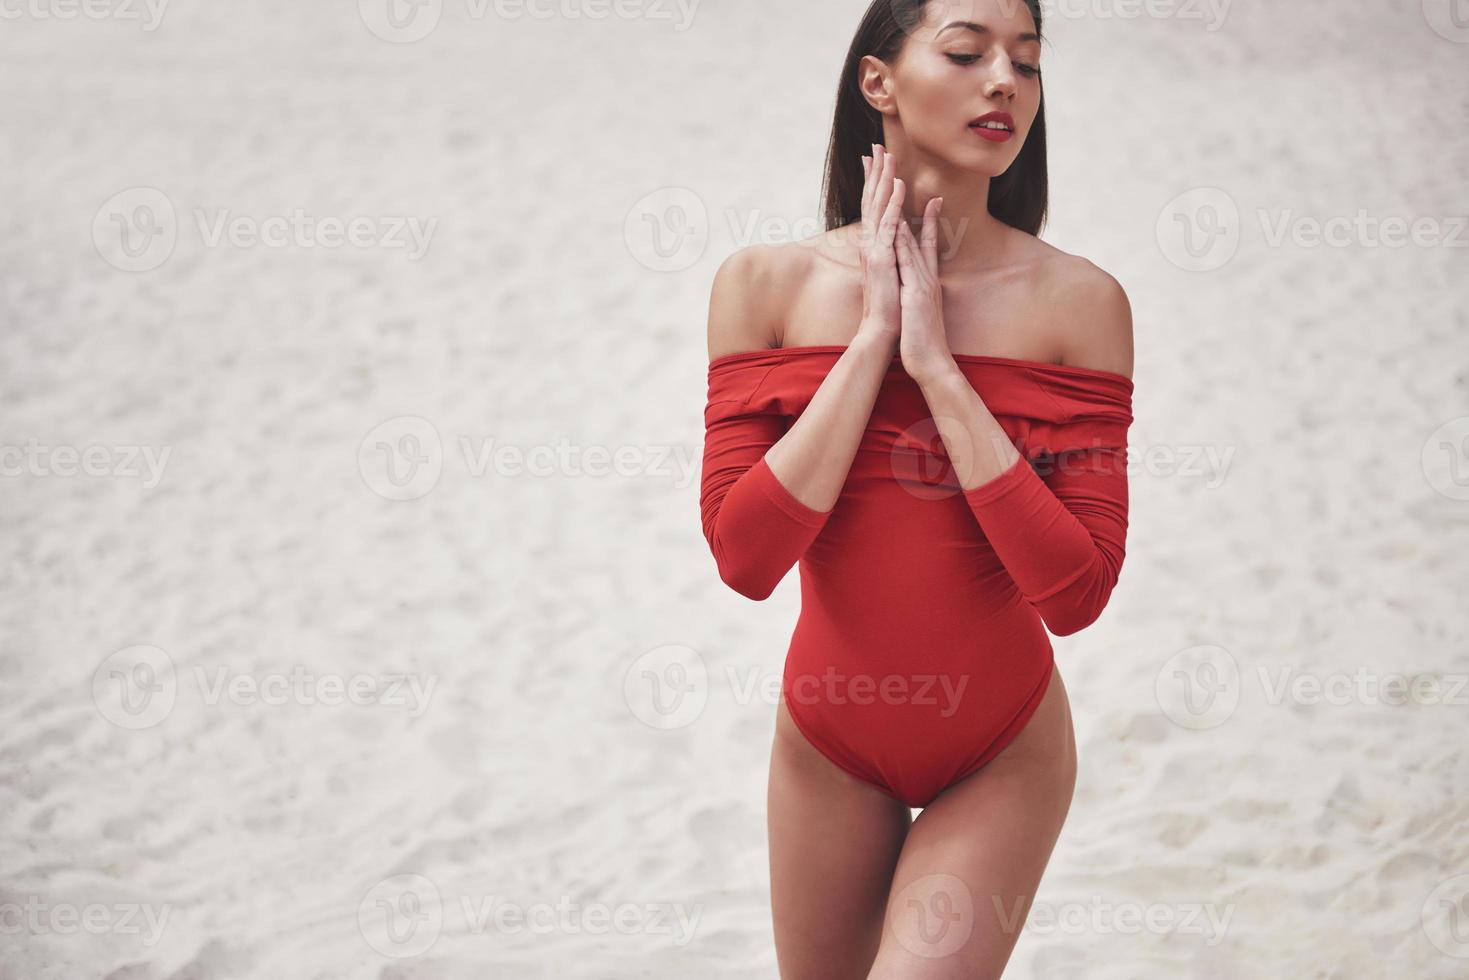 mooie jonge gebruinde vrouw in rode bikini poseren op het strand. sexy modelportret met perfect lichaam. zomervakantie concept foto